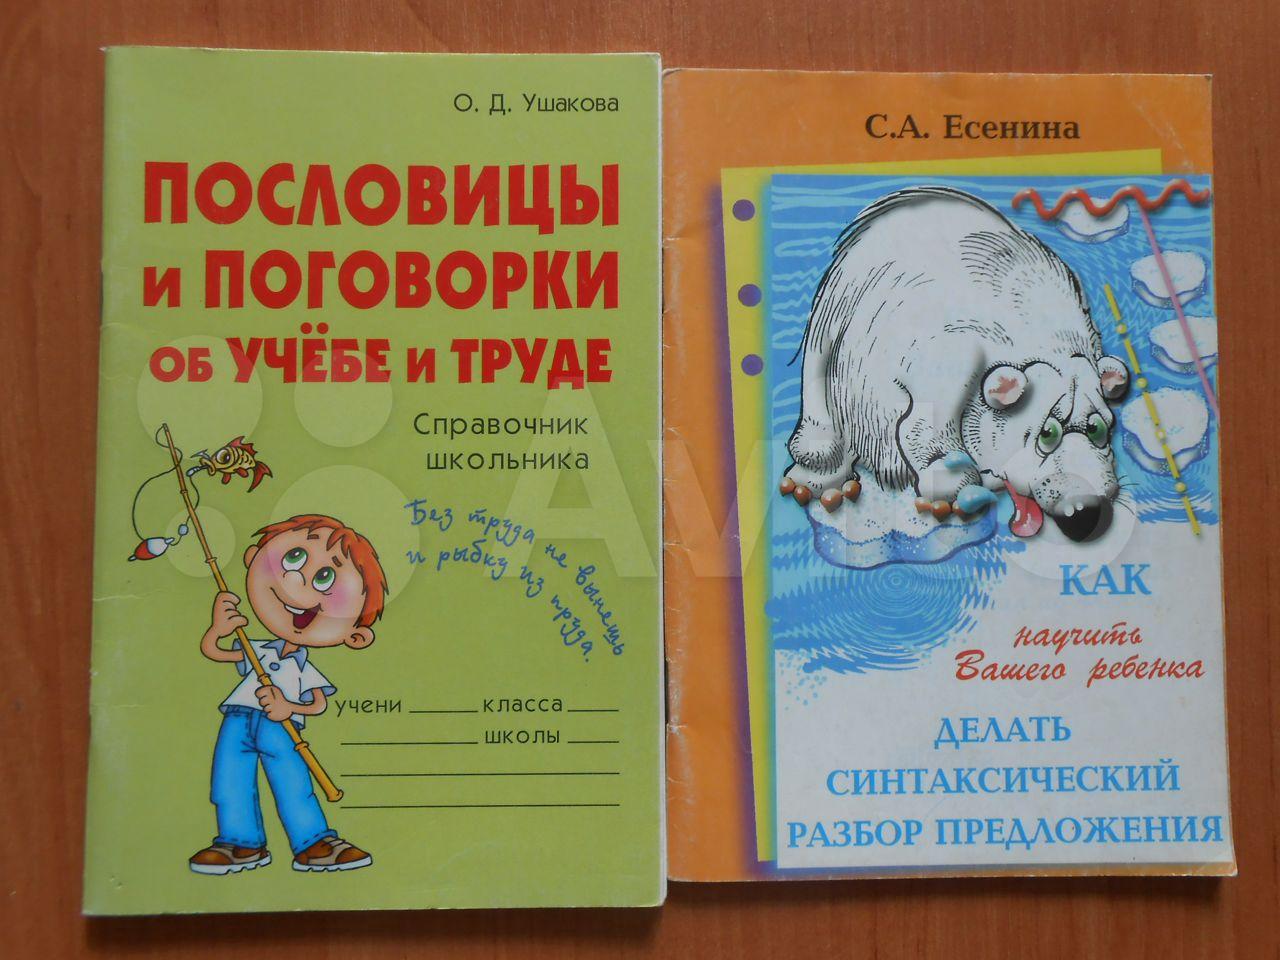 Пословицы и поговорки об учебе и труде О. Д. Ушакова